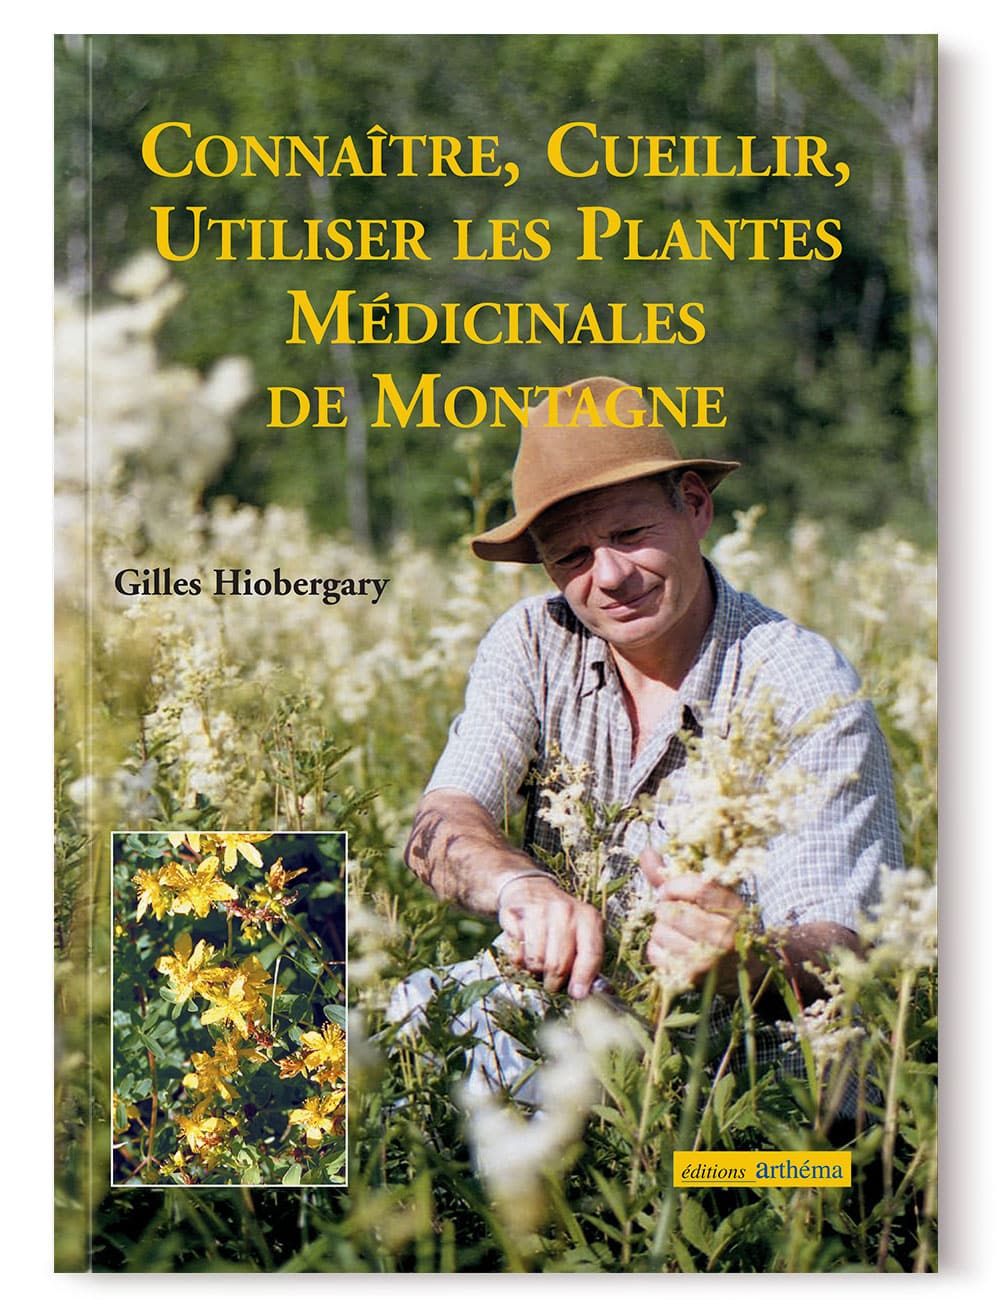 Flore des Alpes la médecine des montagnes | Éditions Arthéma